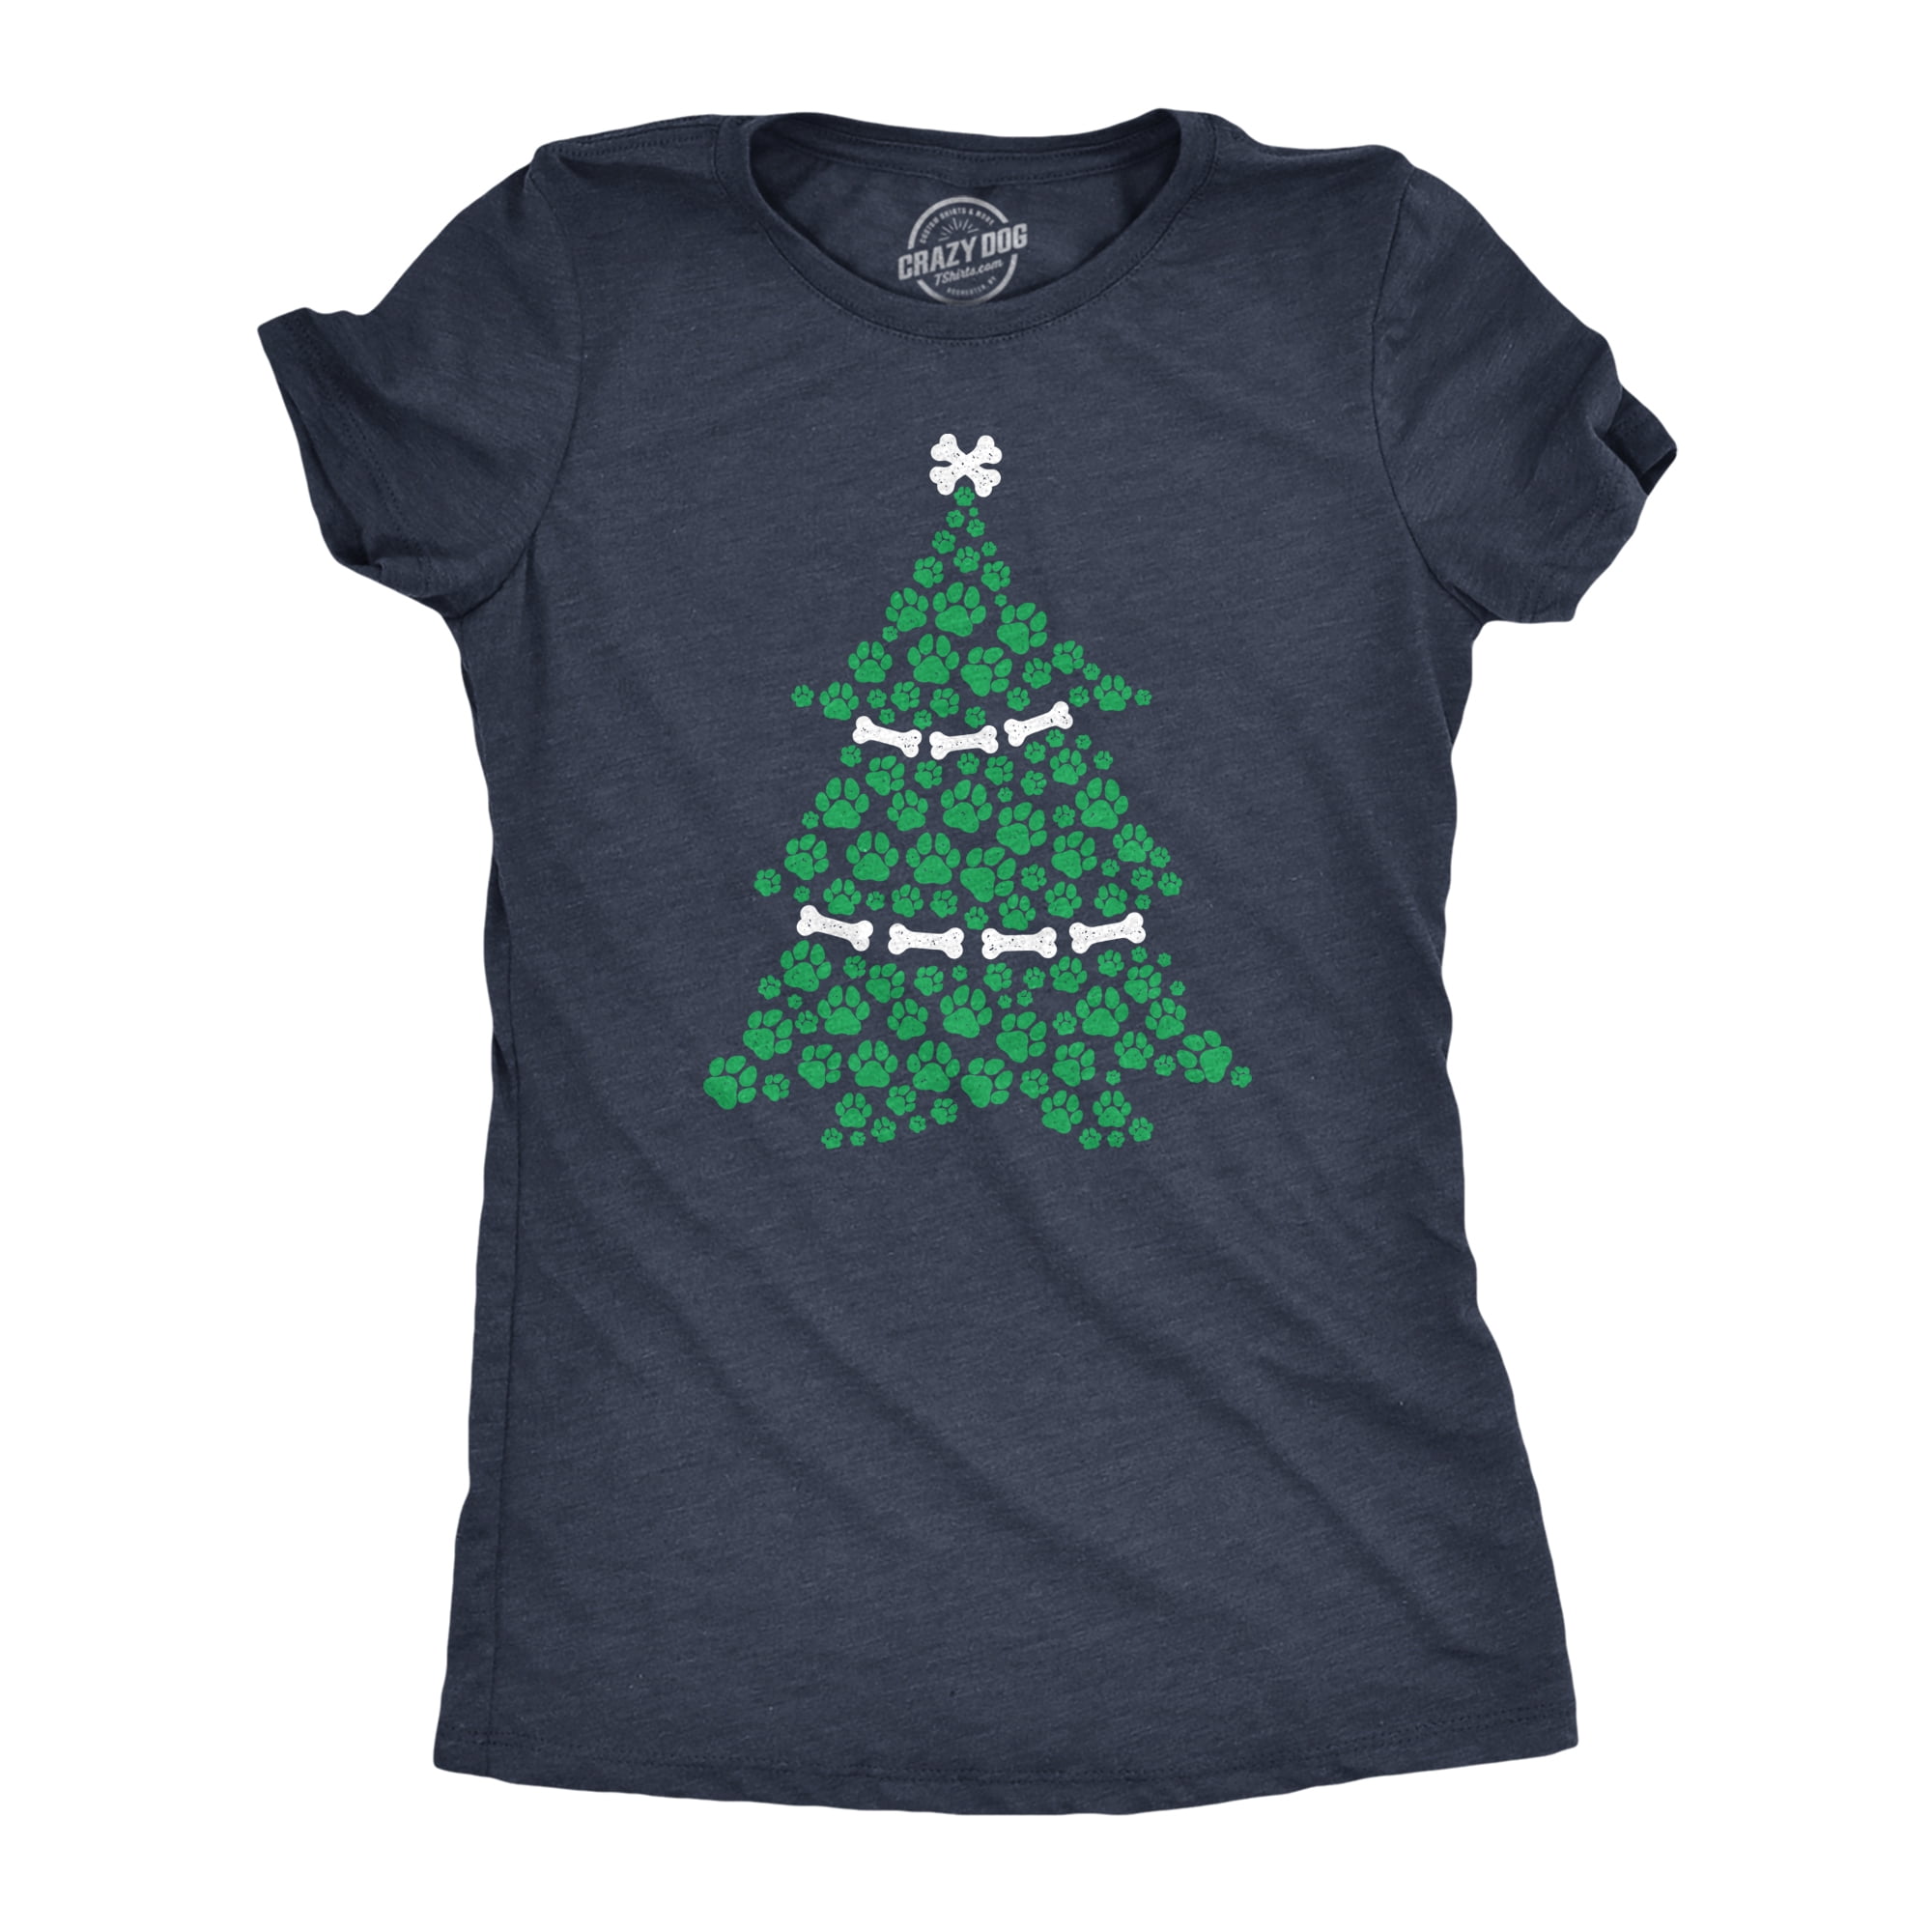 Shirts For Christmas,Cute Christmas Shirt,Holiday Tee Christmas Shirts for Women Christmas Tree Shirt Christmas Tee Christmas TShirt